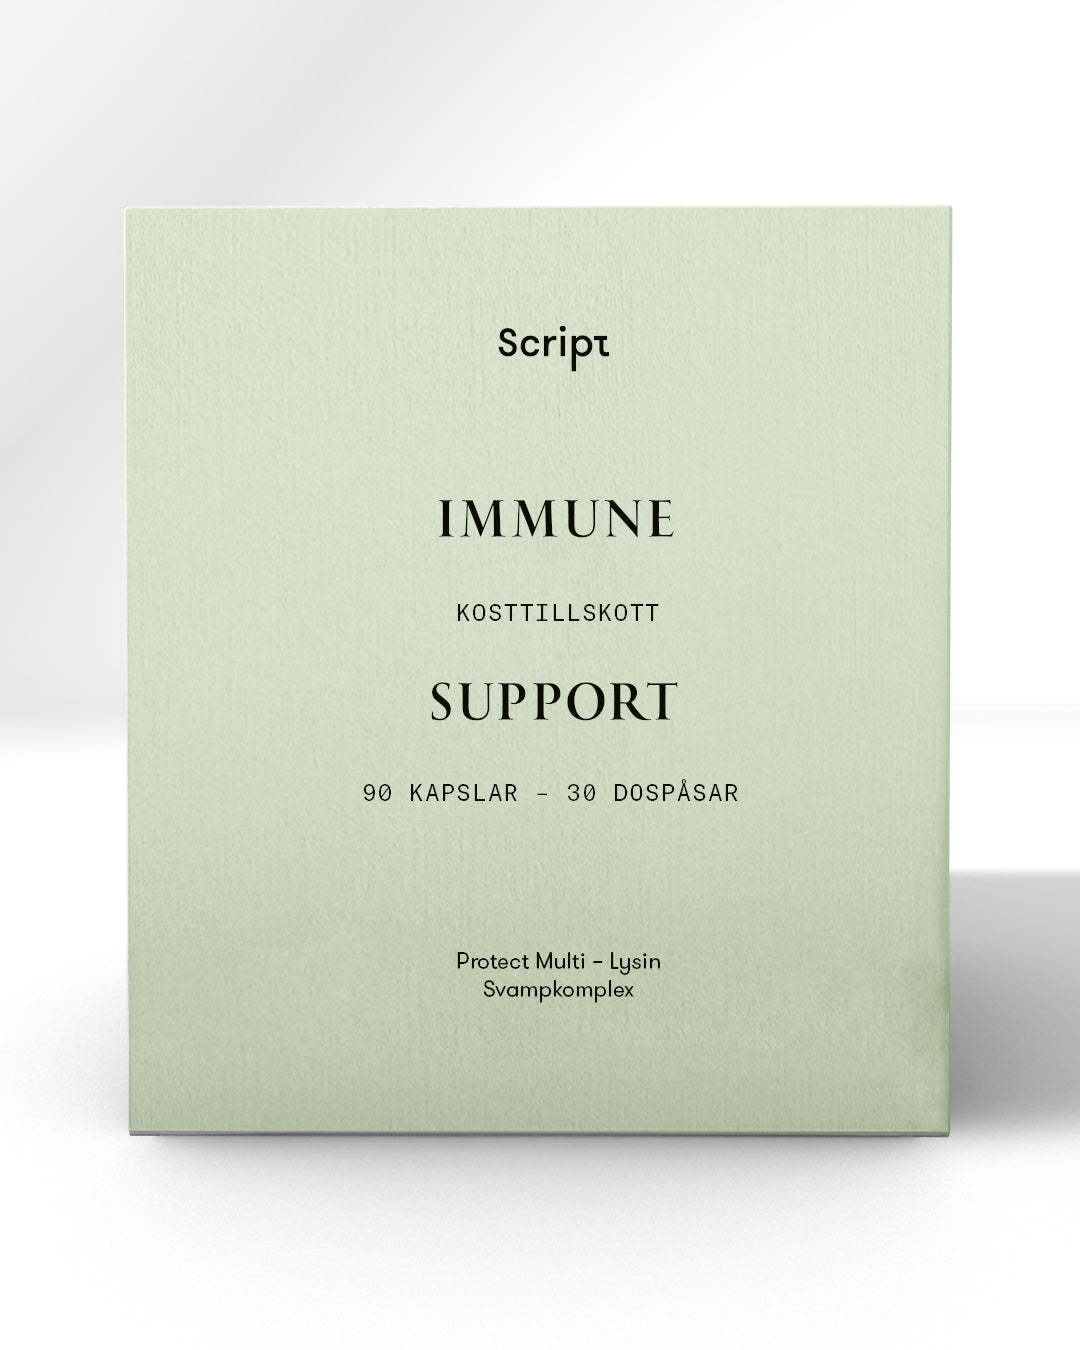 Immune Support kit - 30 dospåsar